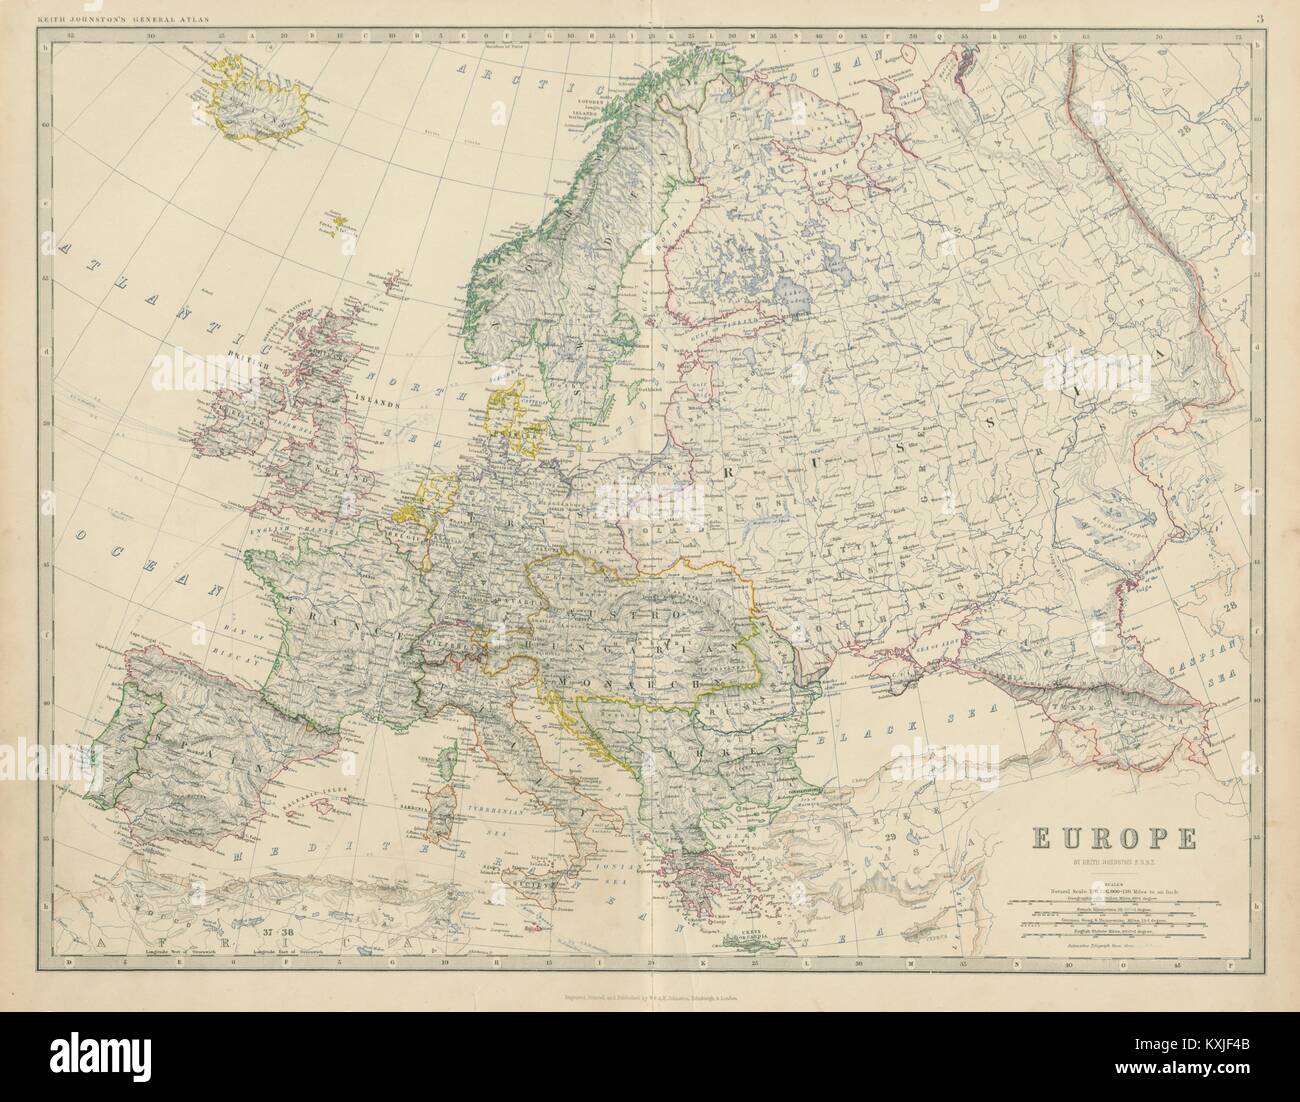 Europa. Der österreichisch-ungarischen Monarchie. Preußen. Rumänien. 50 x 60 cm. JOHNSTON 1879 Karte Stockfoto